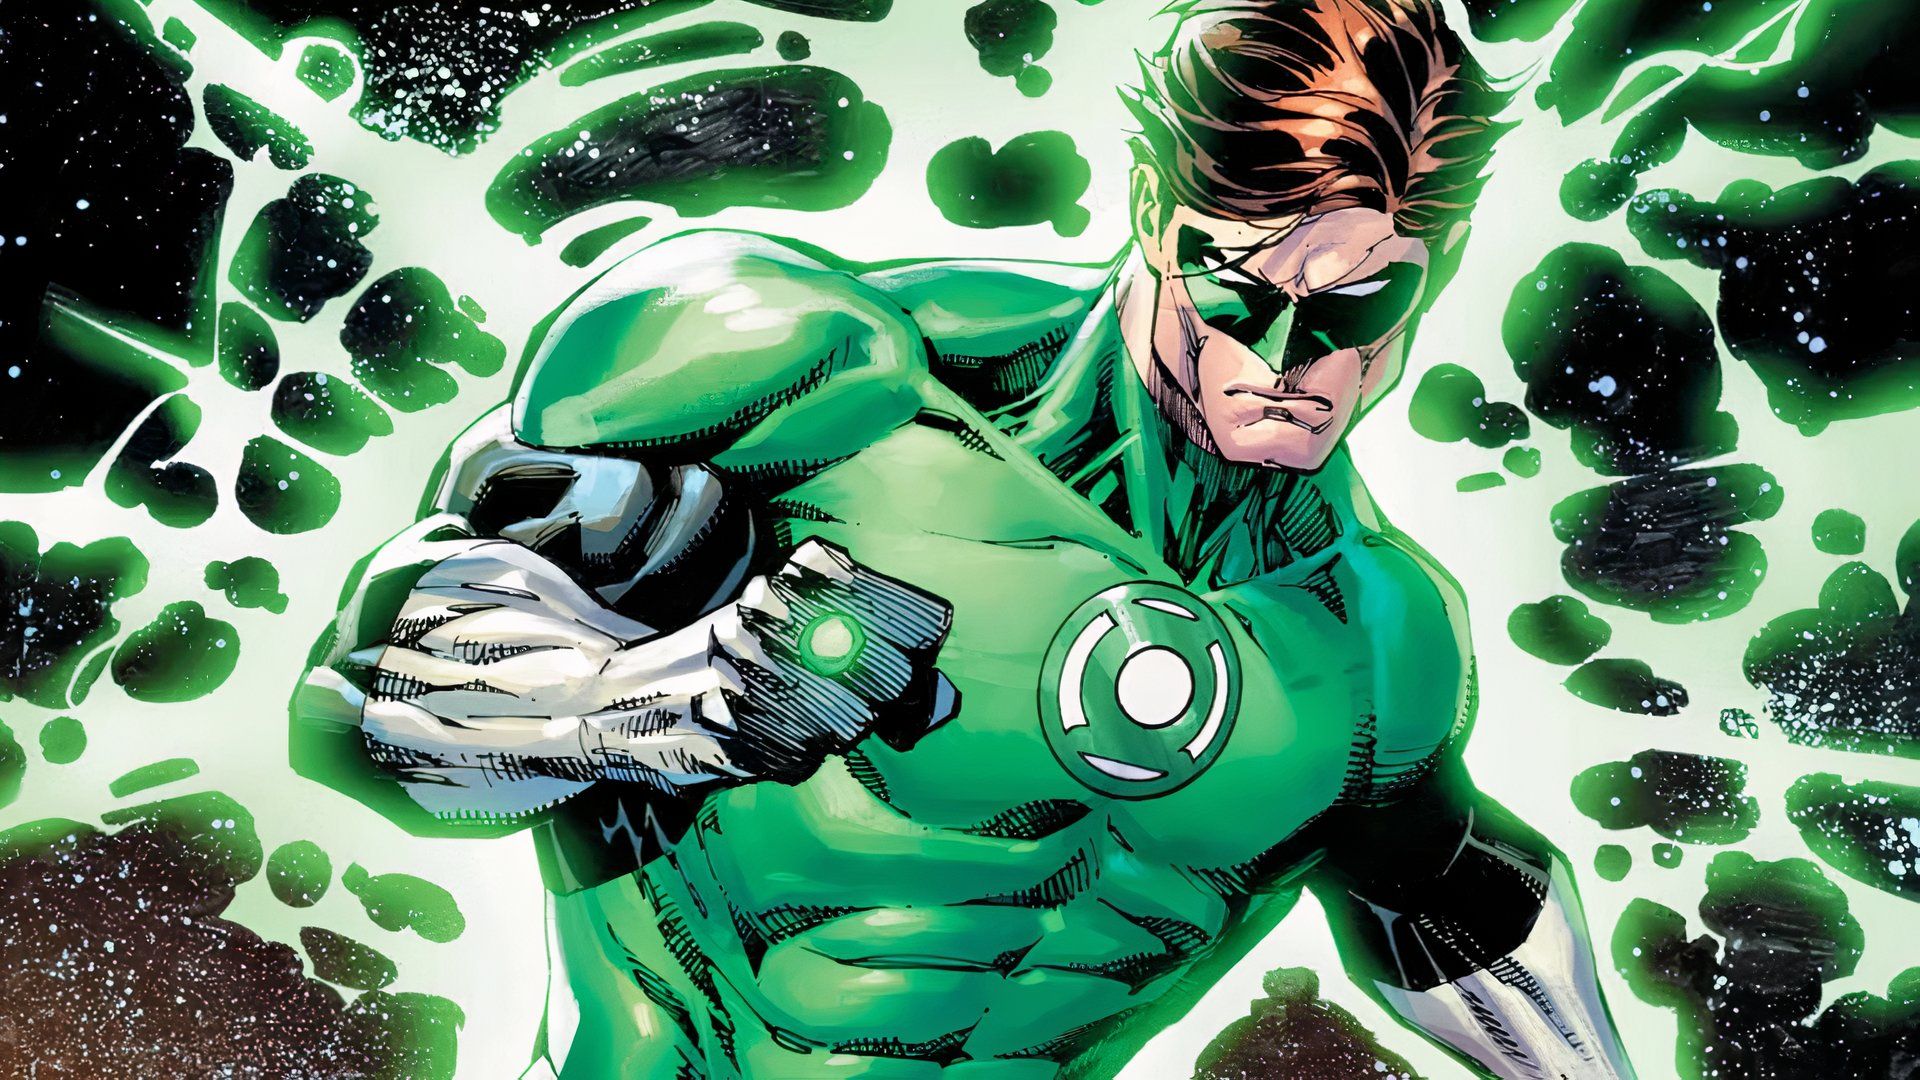 Серия Green Lantern DCU получает чрезвычайно захватывающее обновление от Джеймса Ганна